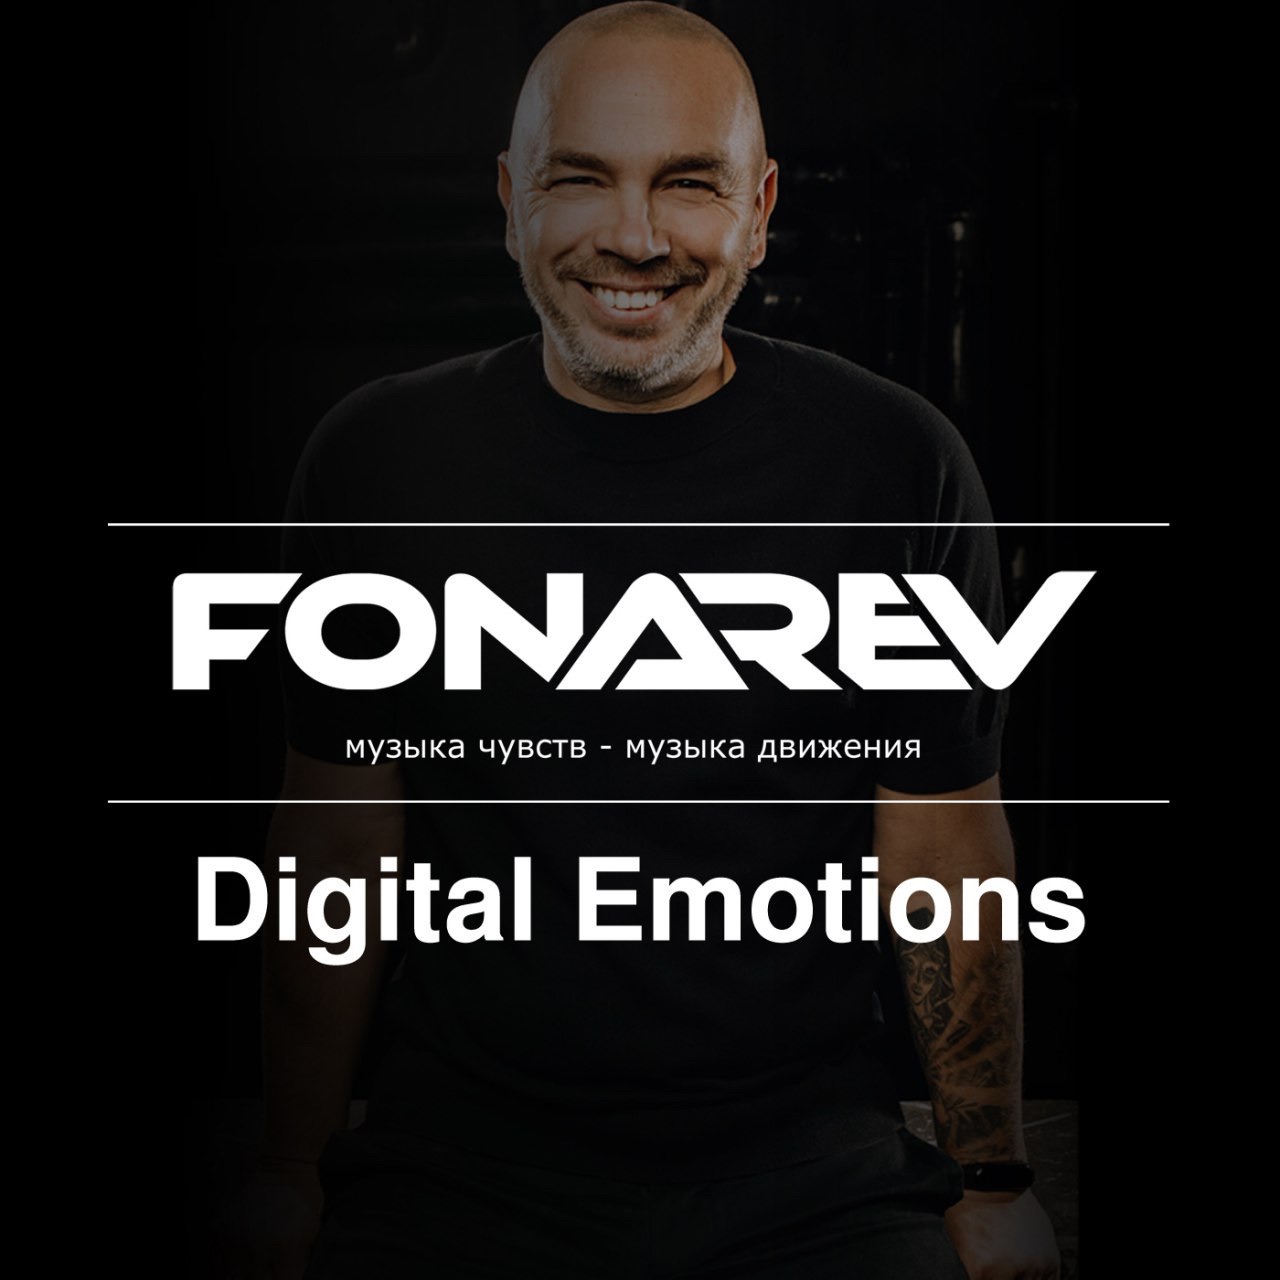 डाउनलोड करा ⚡️ FONAREV - Digital Emotions # 725. 📡